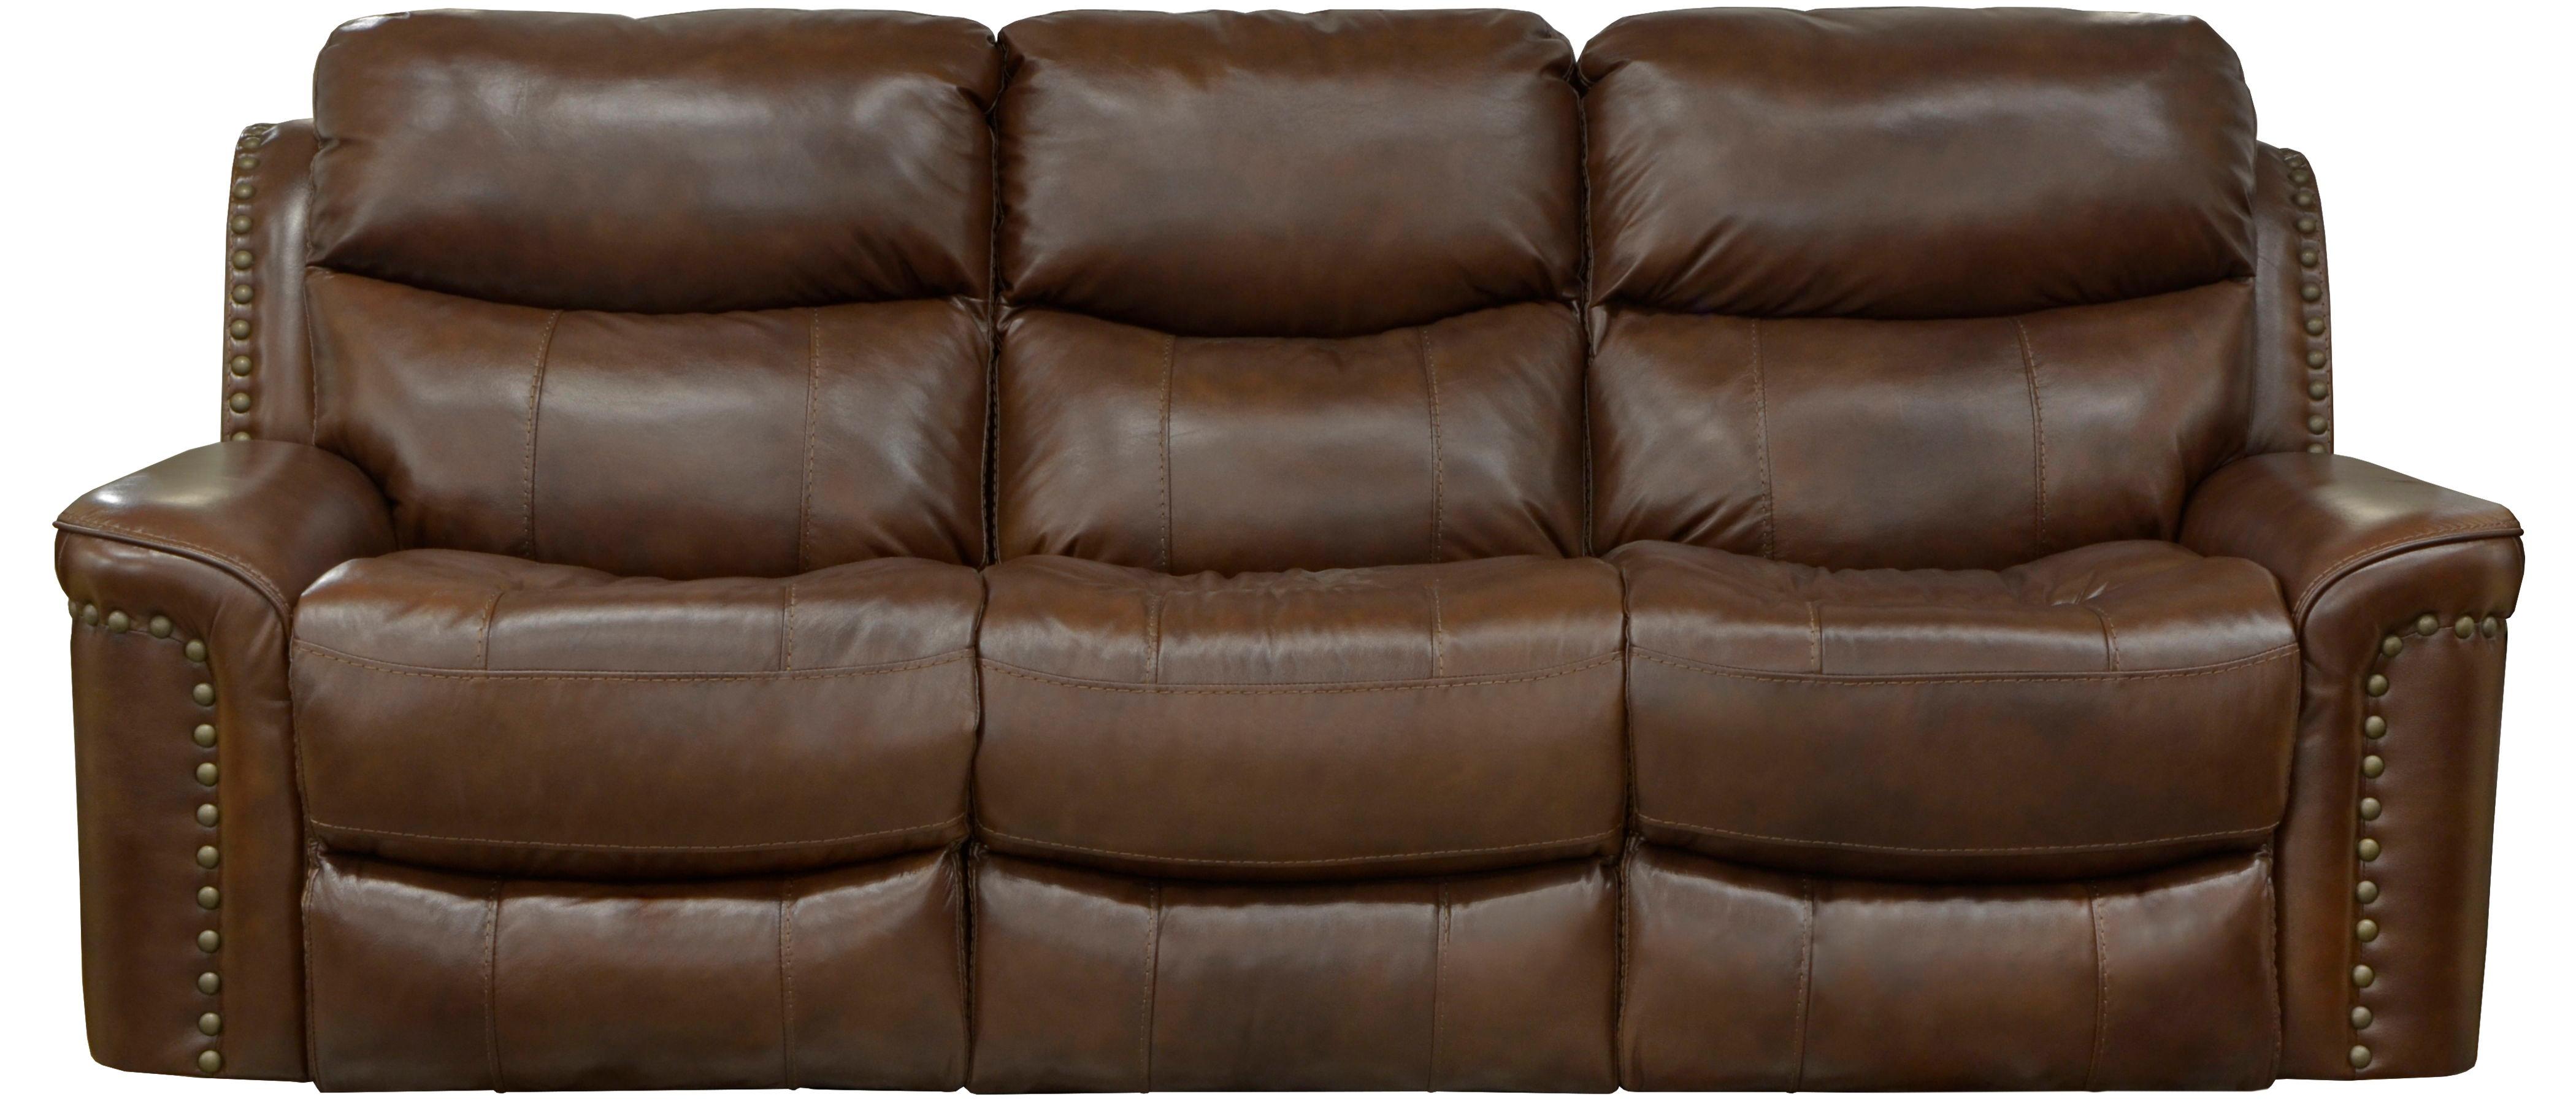 Catnapper - Ceretti - Power Reclining Sofa - Brown - 41.5" - 5th Avenue Furniture